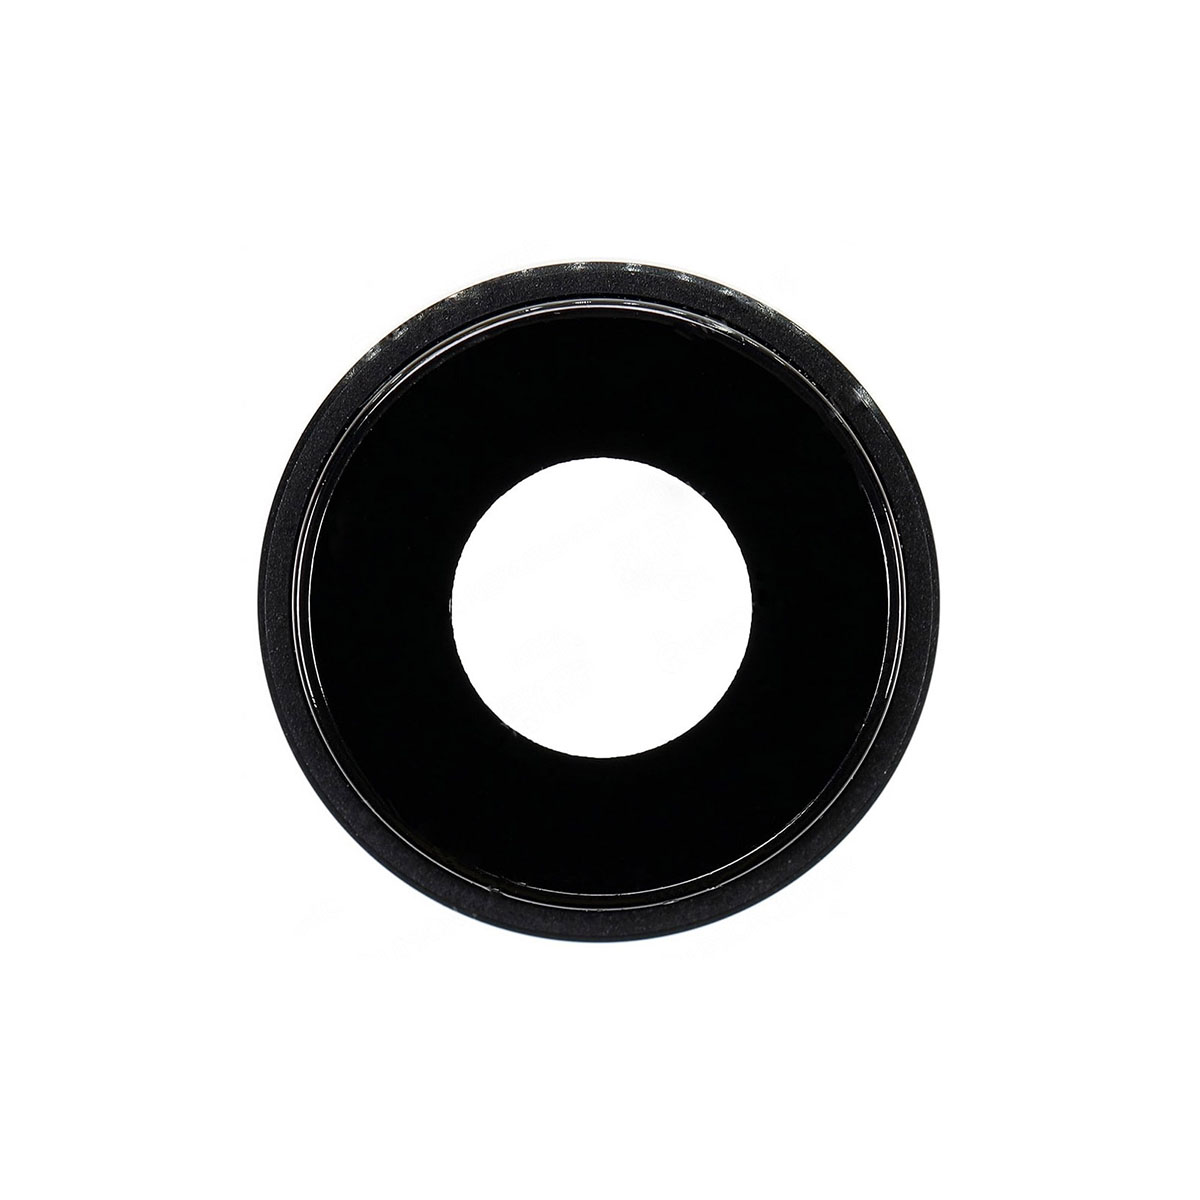 Стекло камеры для APPLE iPhone XR, цвет черный.